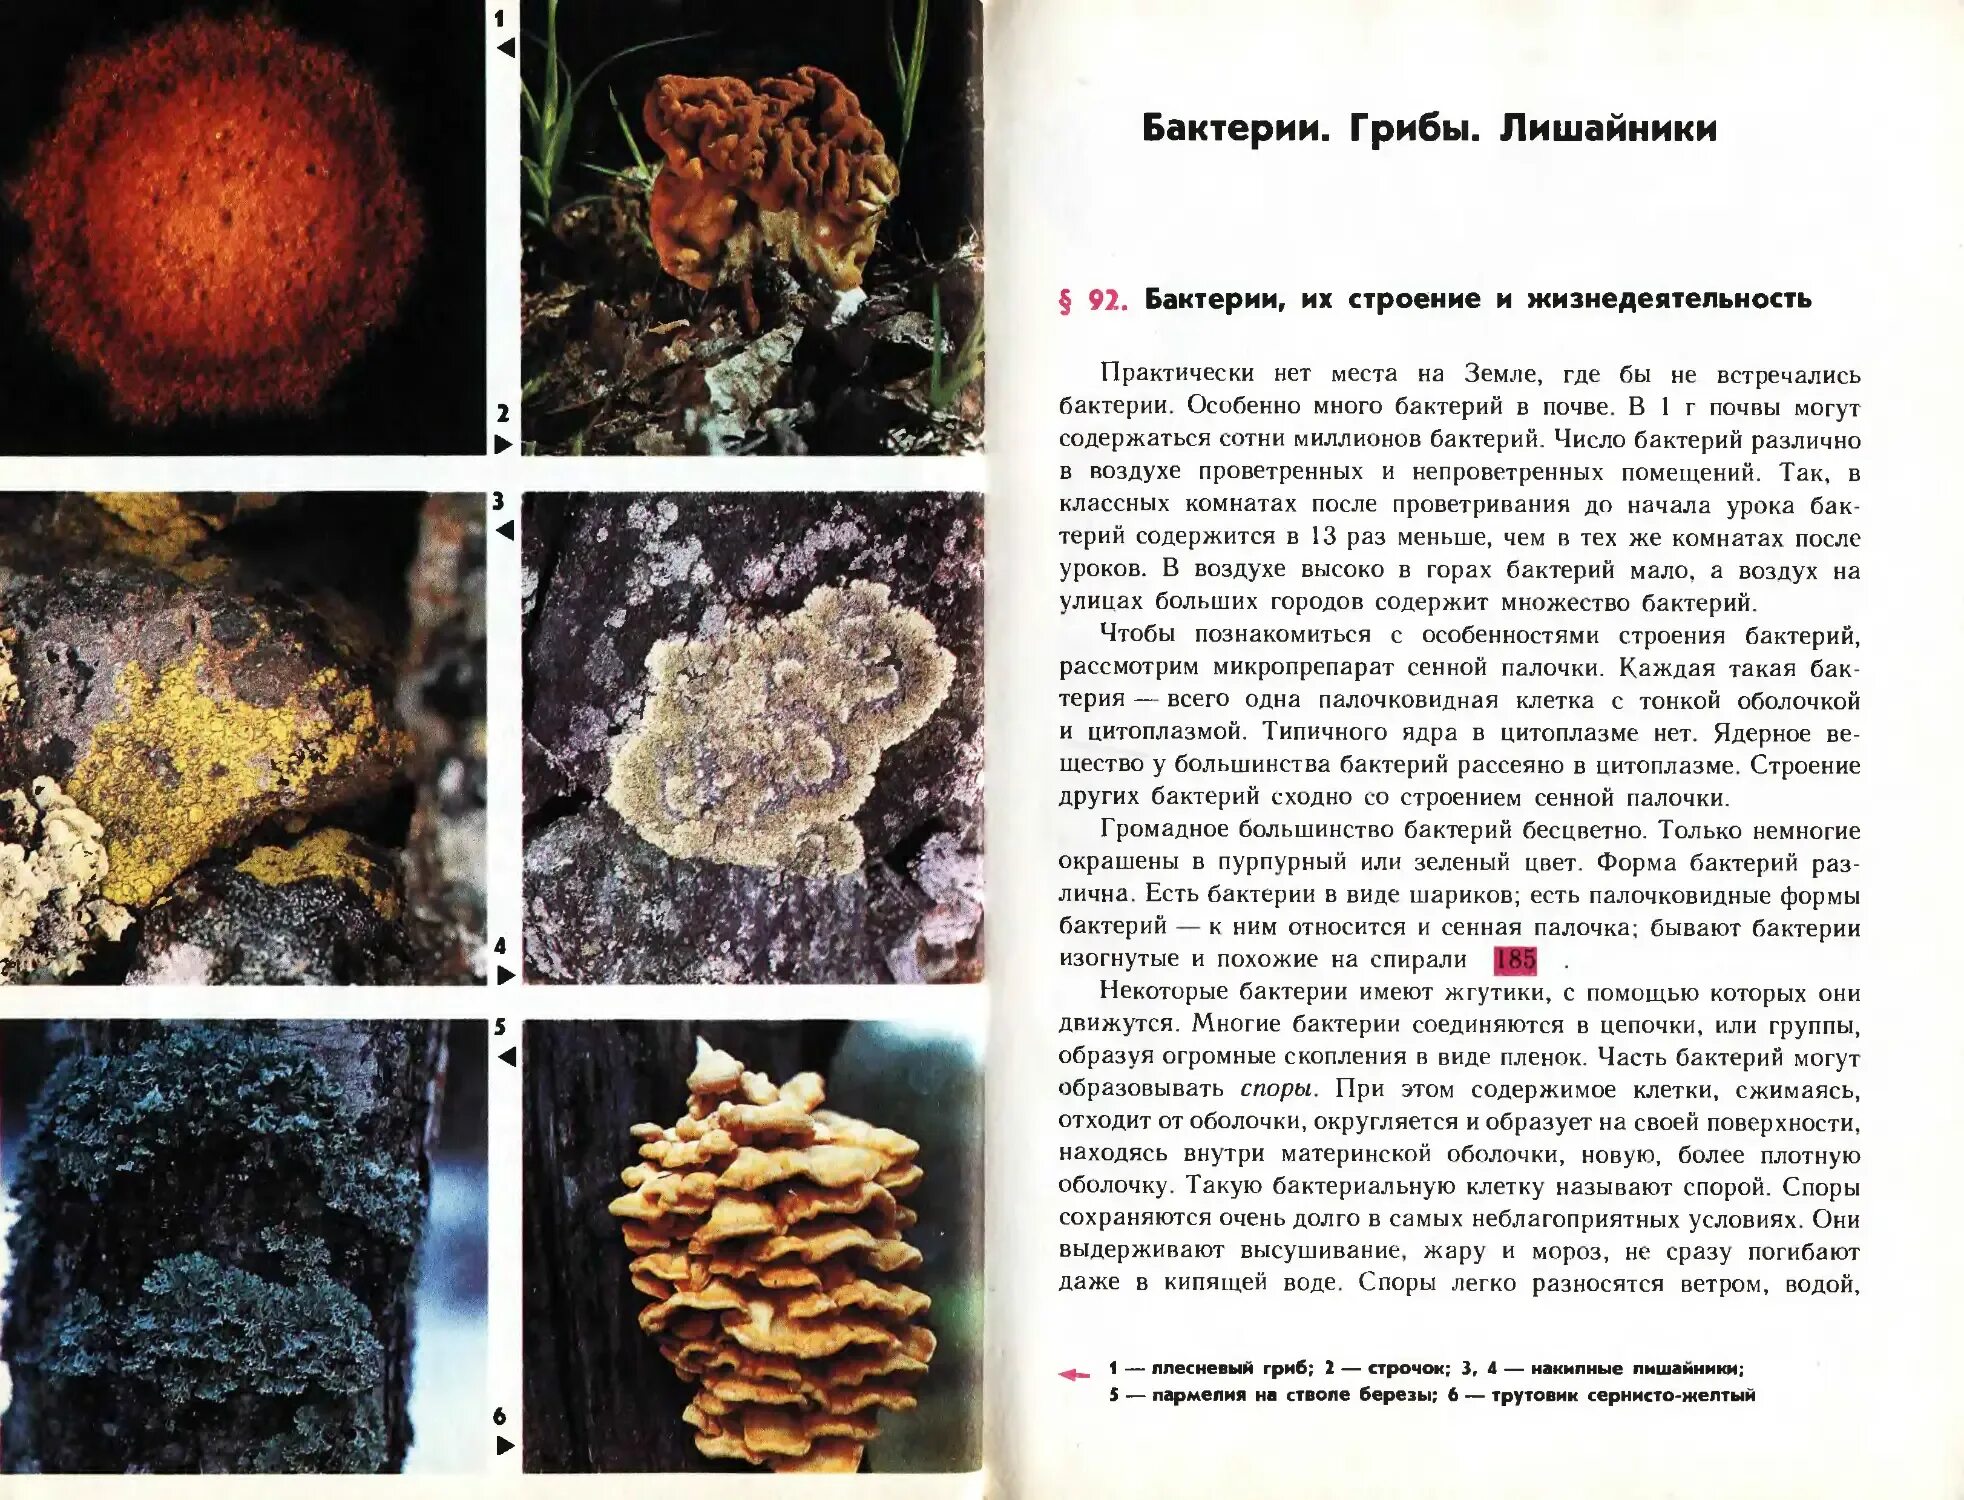 Бактерии грибы лишайники. Грибы и бактерии. Бактерии грибы лишайники таблица. Бактерии грибы лишайники сравнительная таблица.